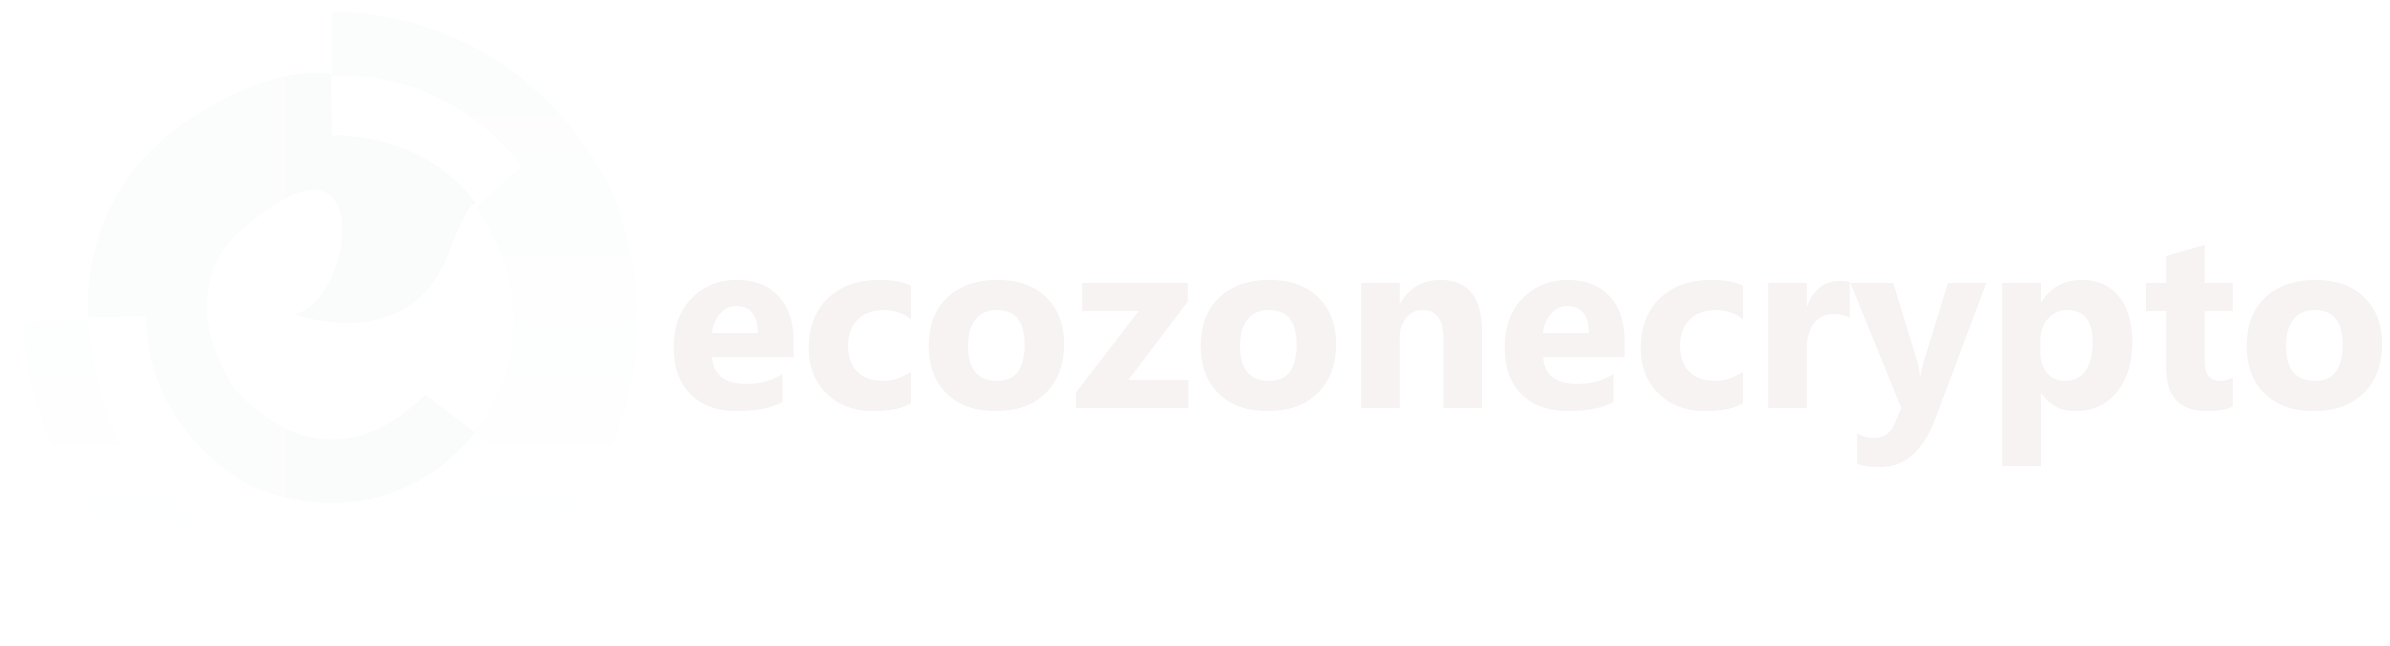 Ecozonecrpto logo